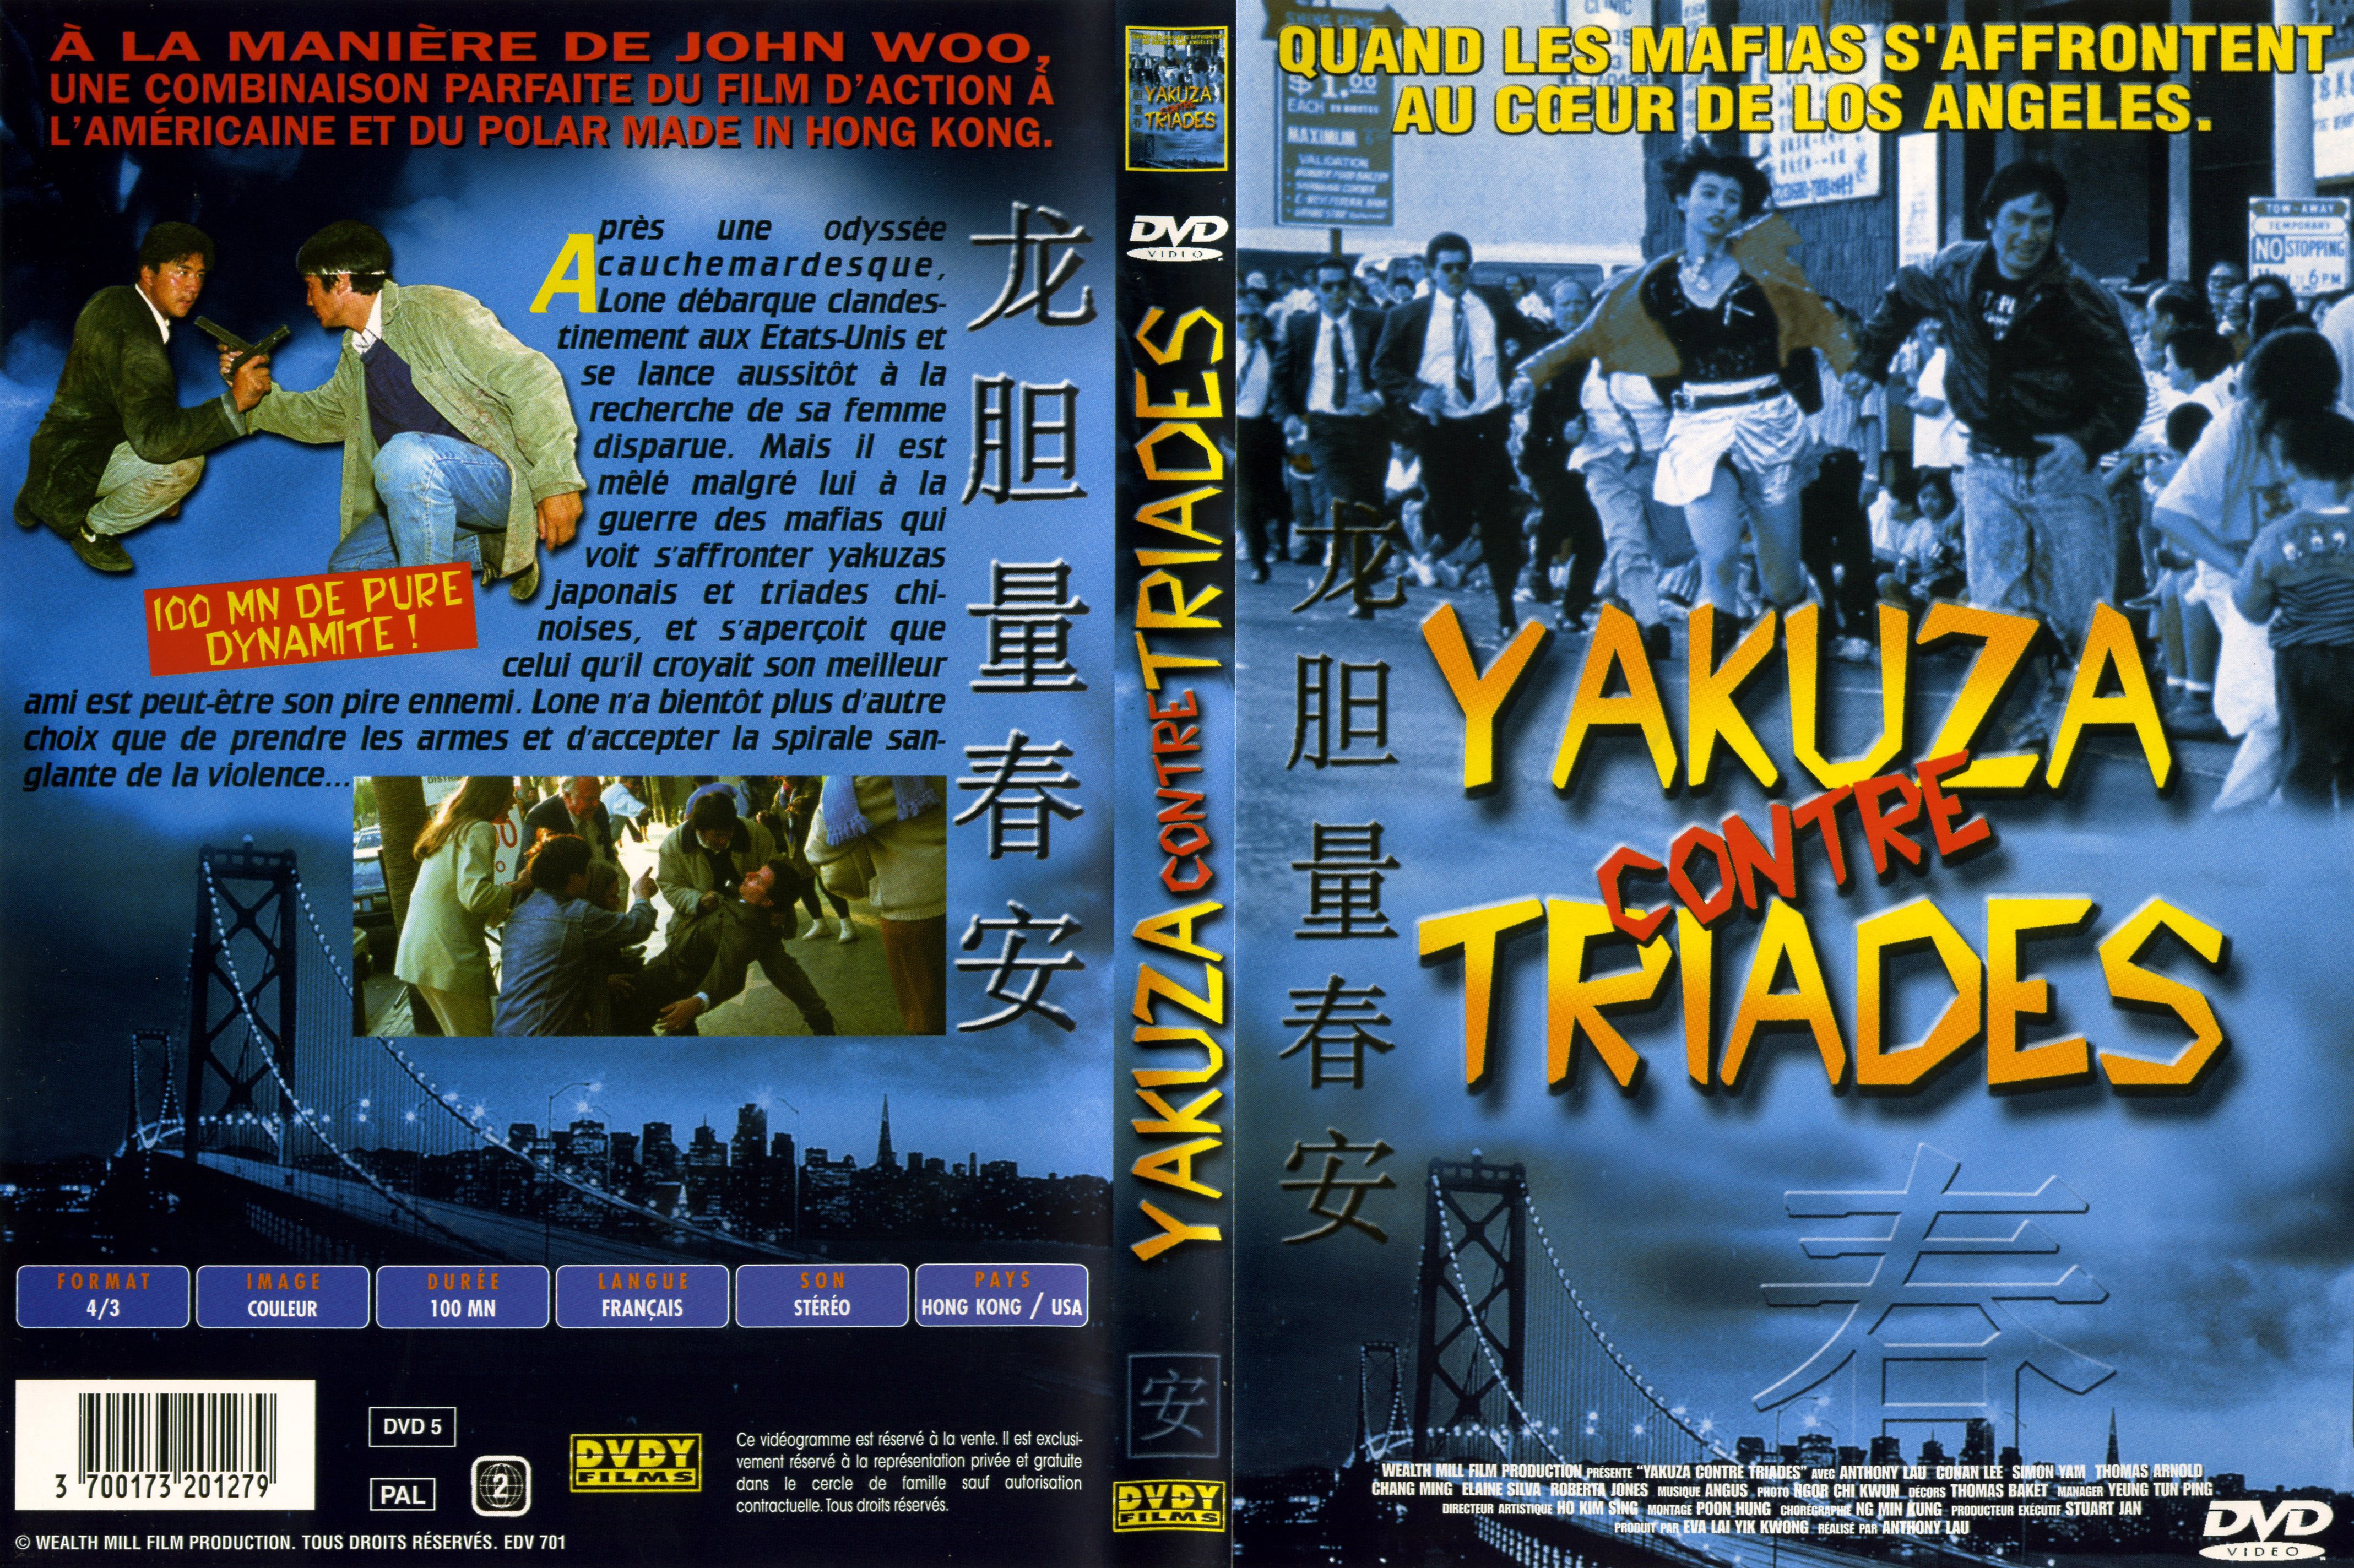 Jaquette DVD Yakuza contre Triades